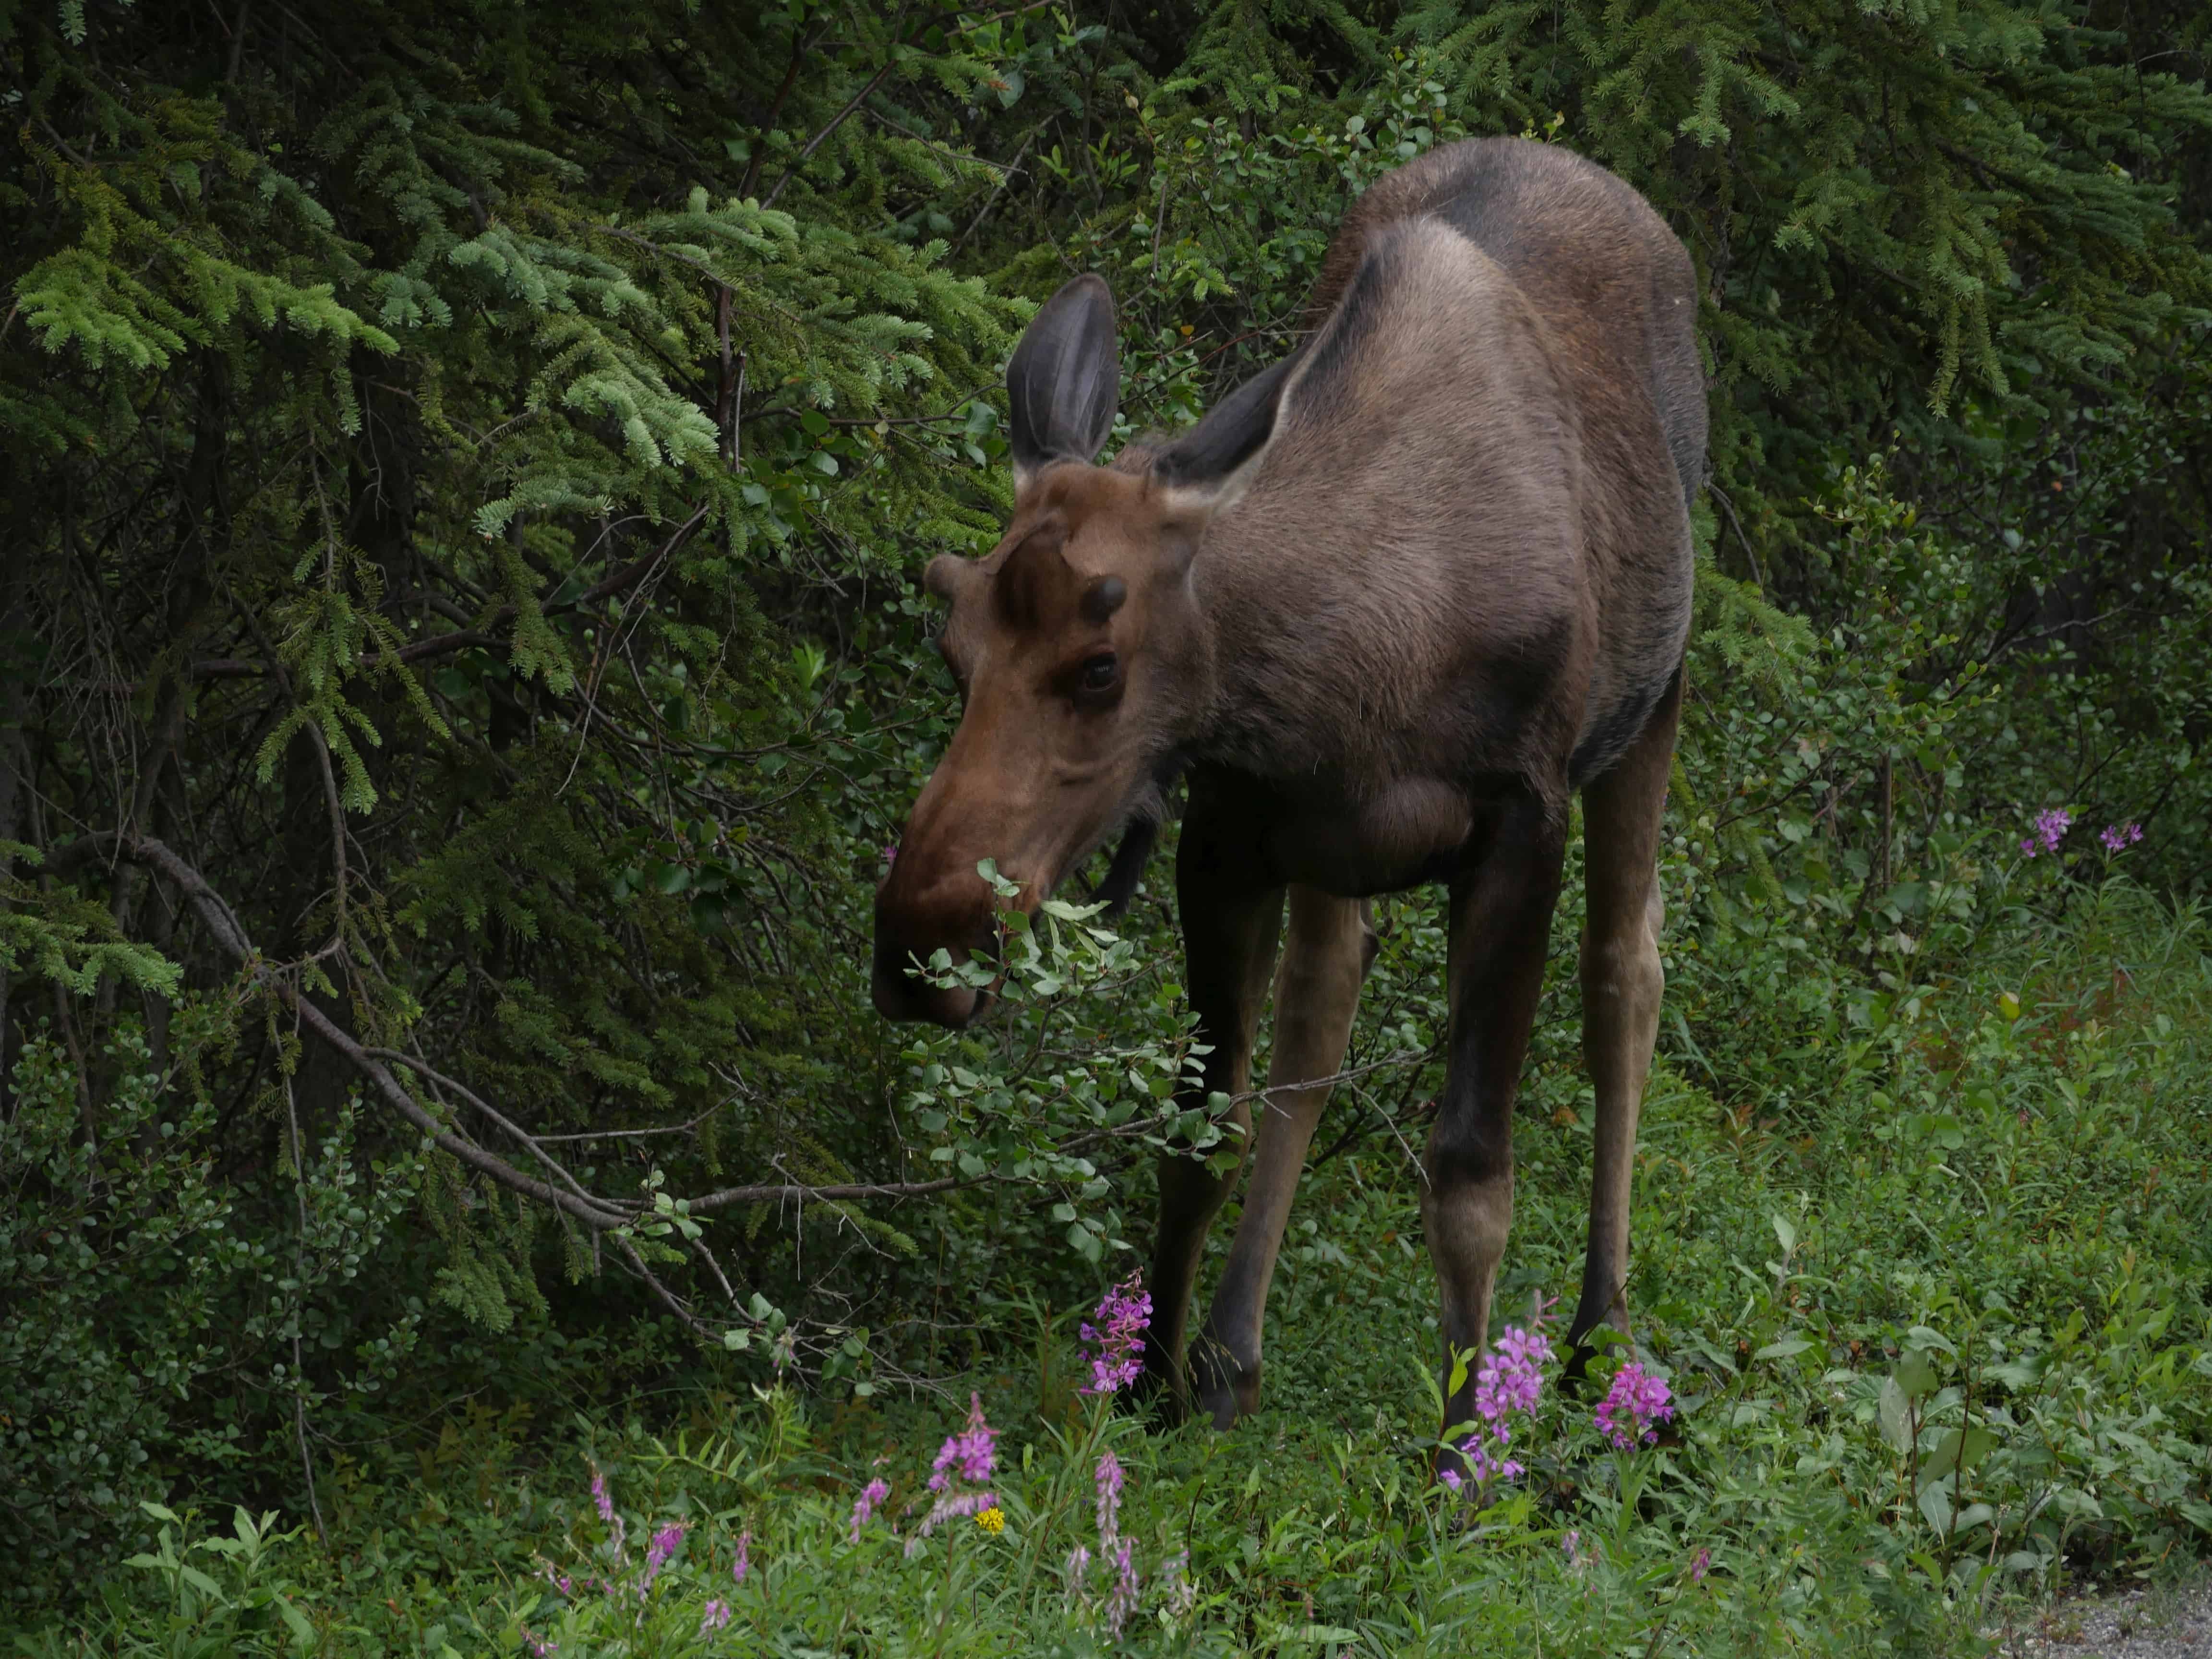 Die Tierwelt Kanadas fasziniert mit großen und kleinen Tieren, wie diesem jungen Elch. Foto apr/FaszinationKanada